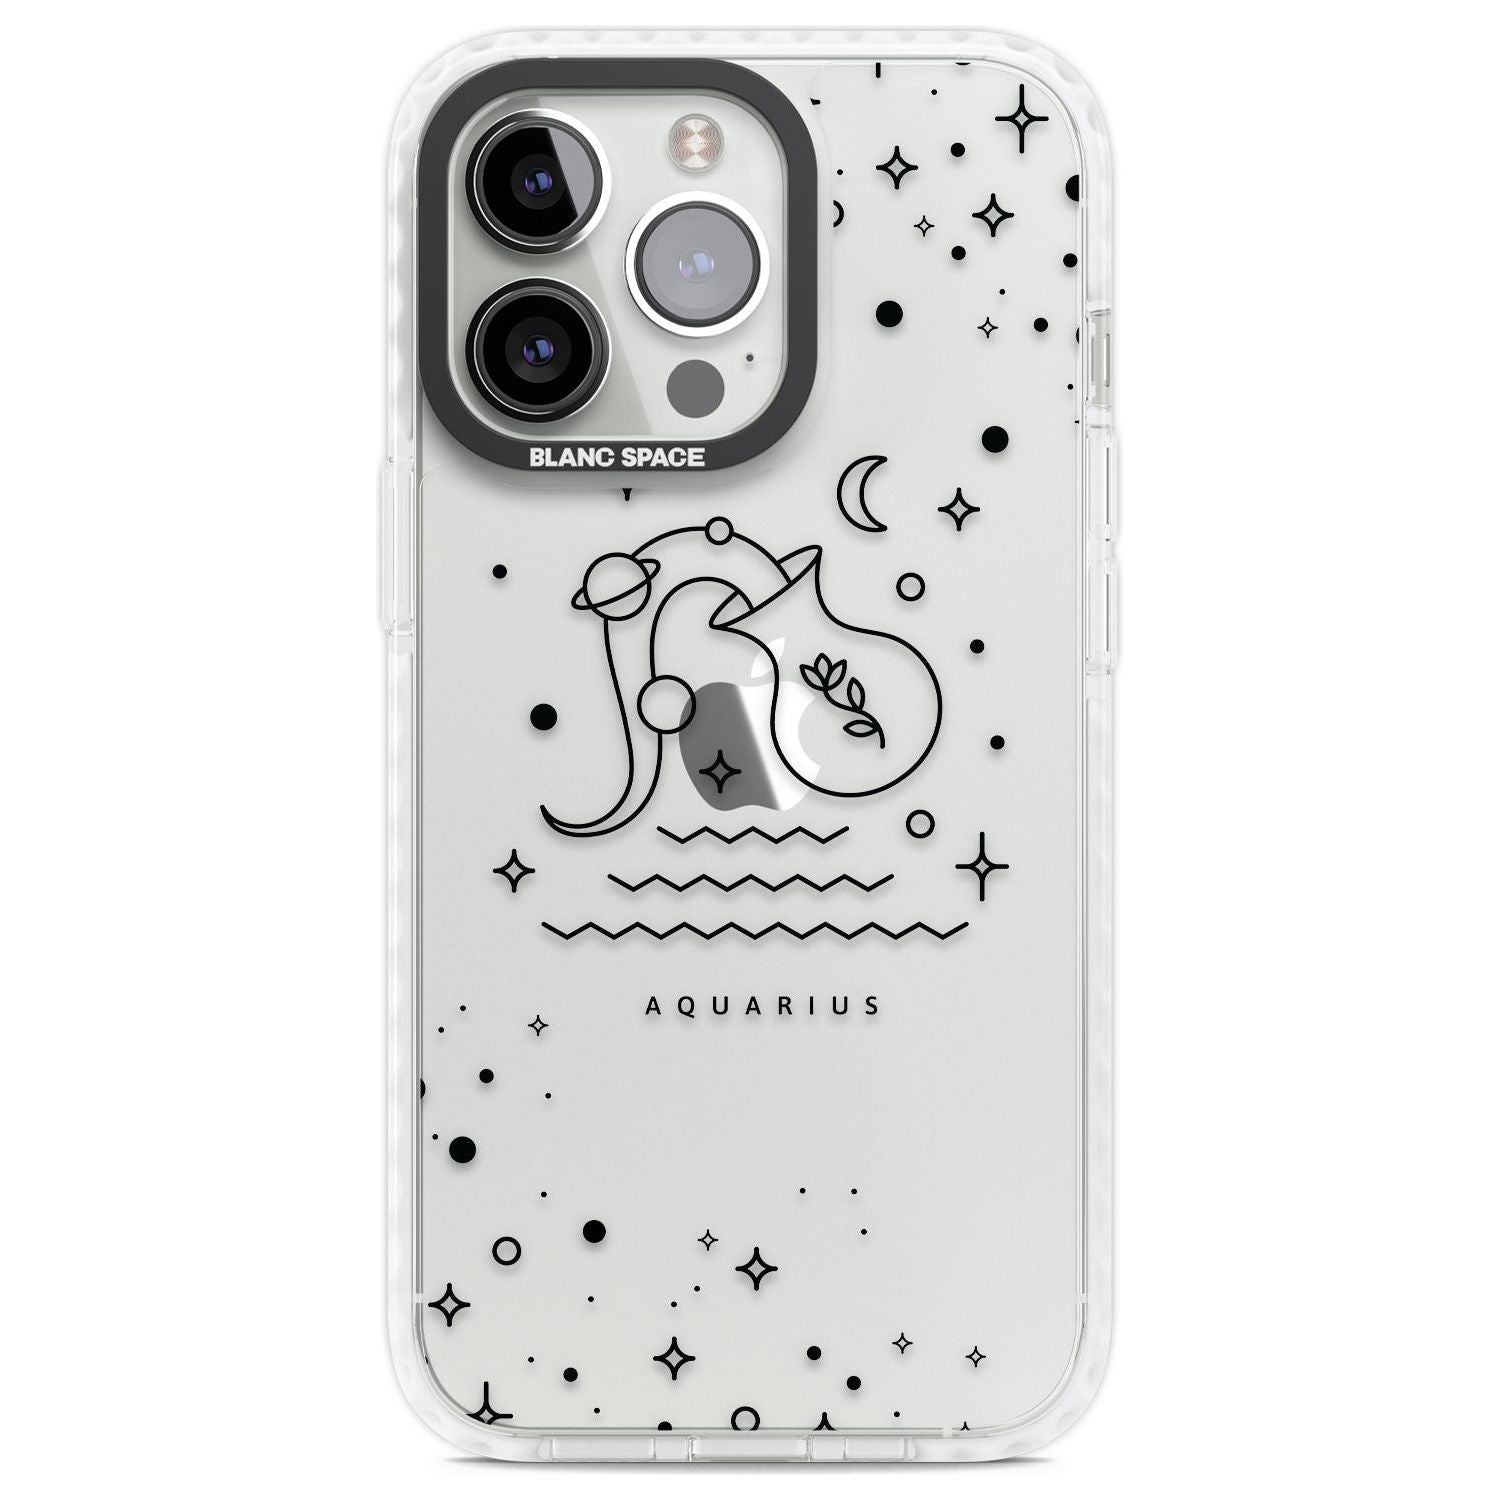 Aquarius Emblem - Transparent Design Phone Case iPhone 13 Pro / Impact Case,iPhone 14 Pro / Impact Case,iPhone 15 Pro Max / Impact Case,iPhone 15 Pro / Impact Case Blanc Space